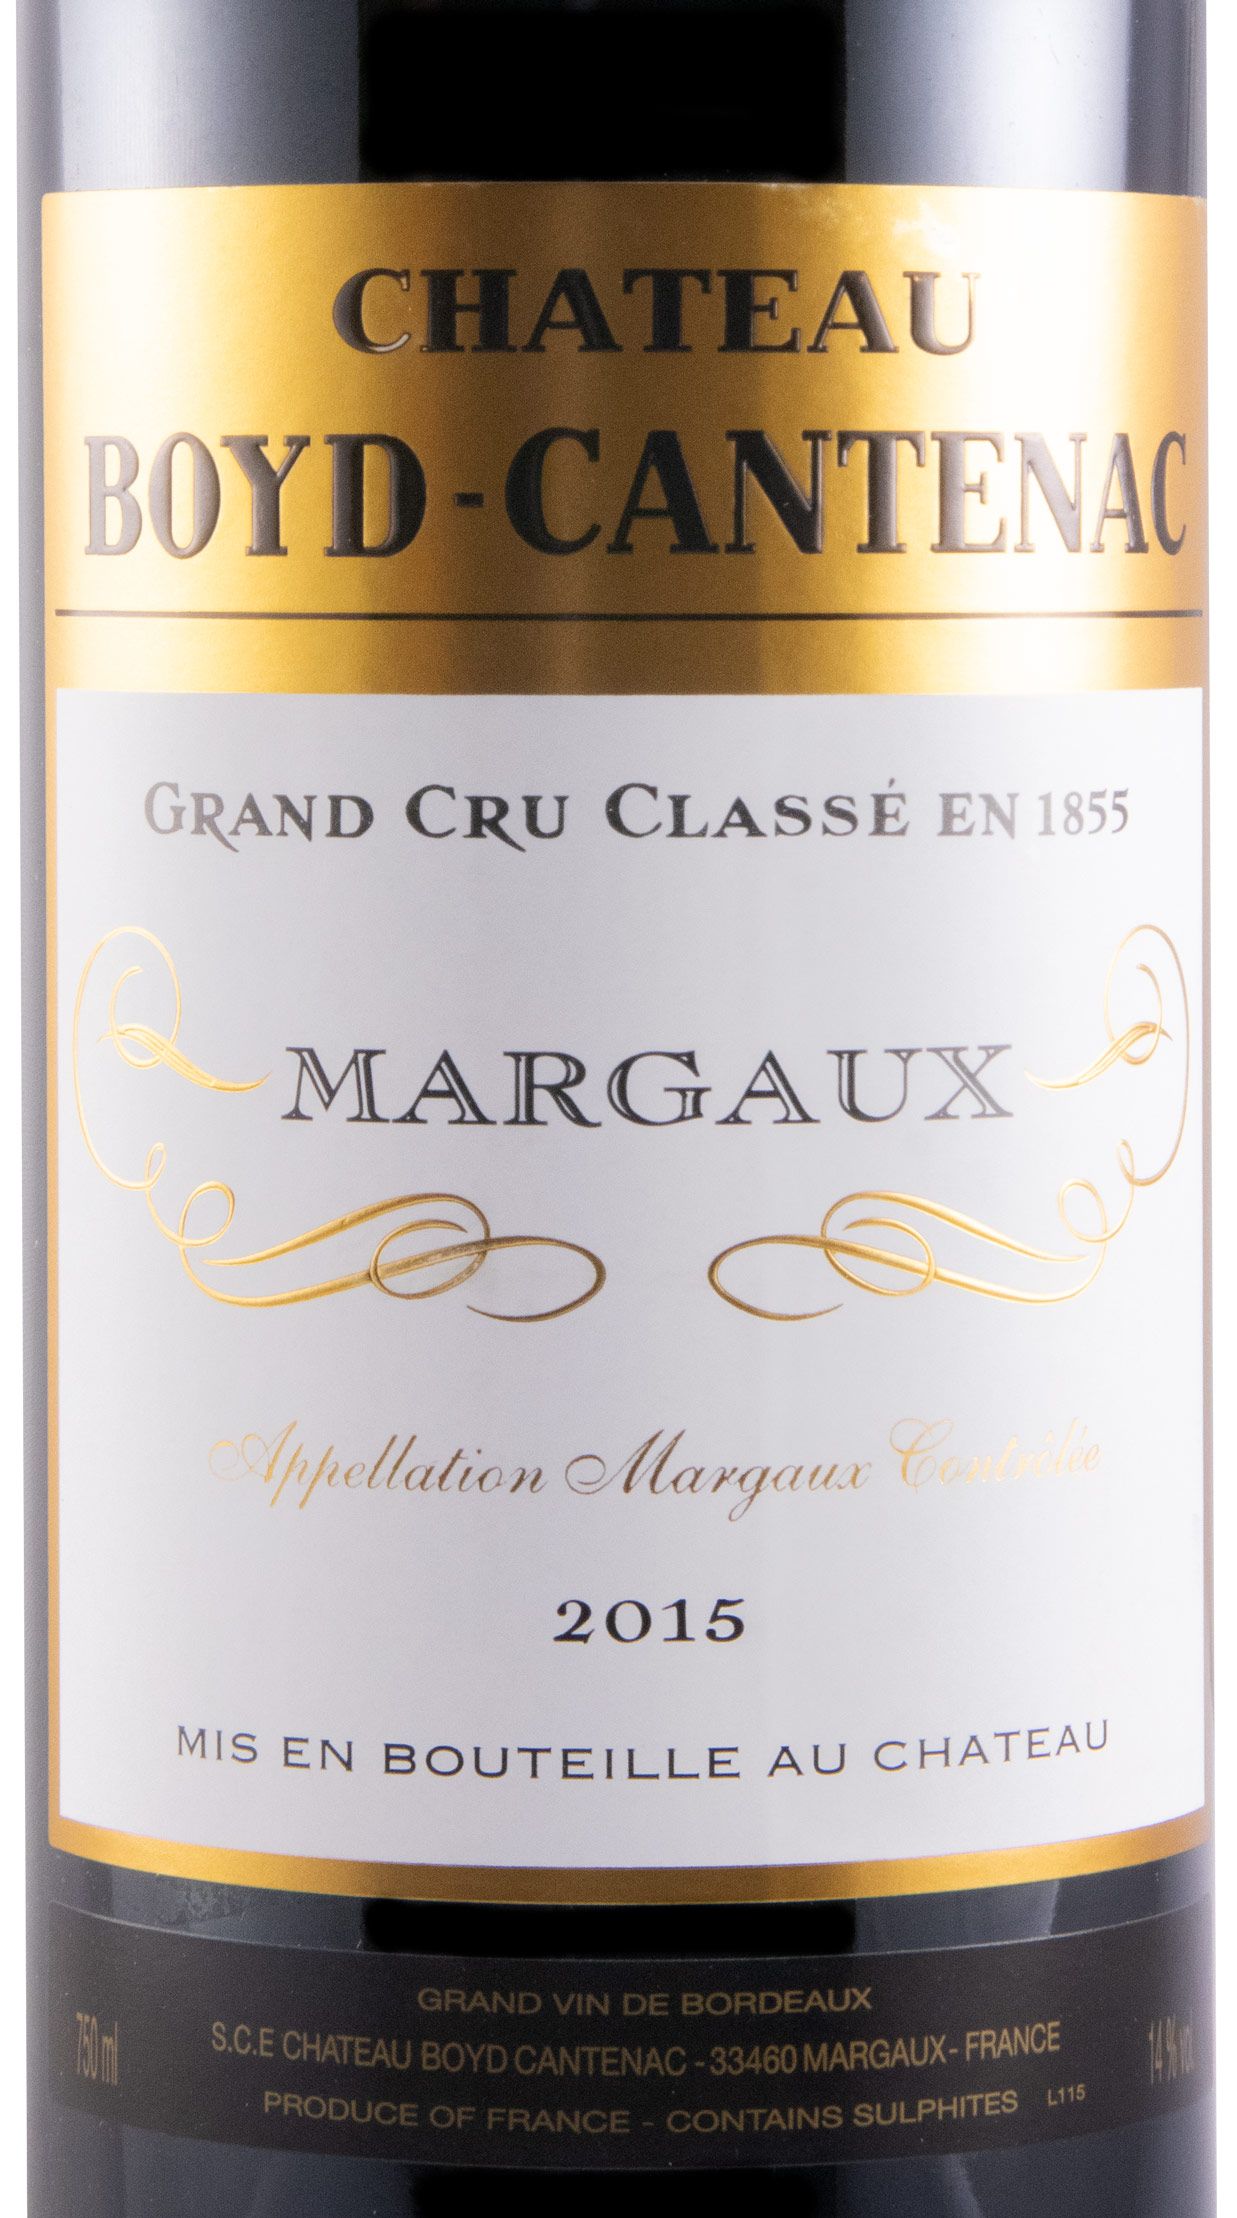 2015 Château Boyd-Cantenac Margaux red